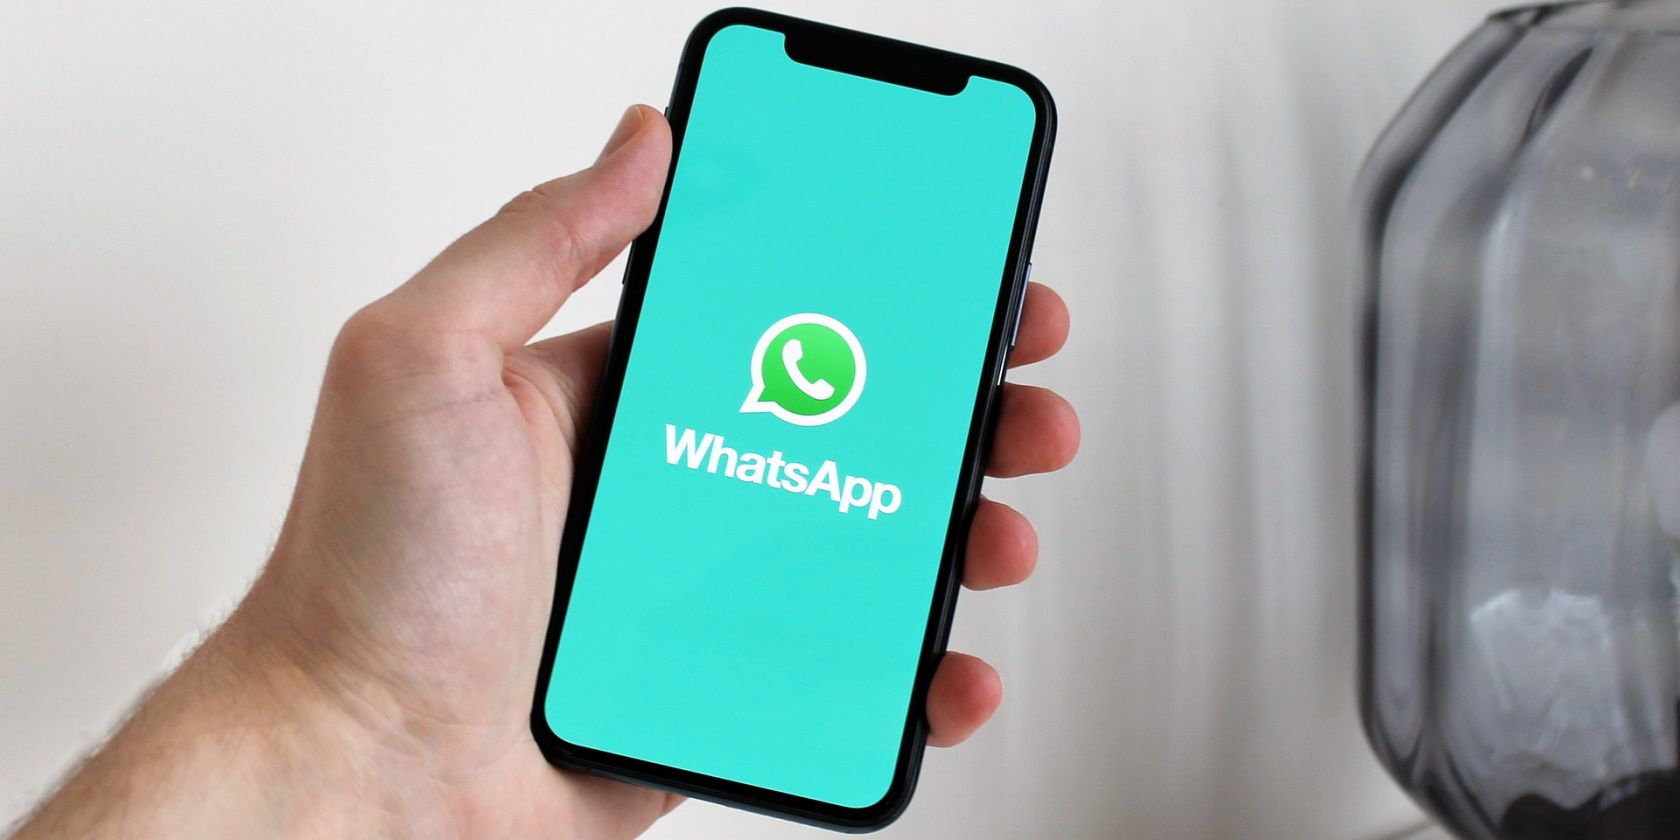 Immagini e contenuti multimediali di WhatsApp non vengono scaricati? Ecco perché e come risolverlo